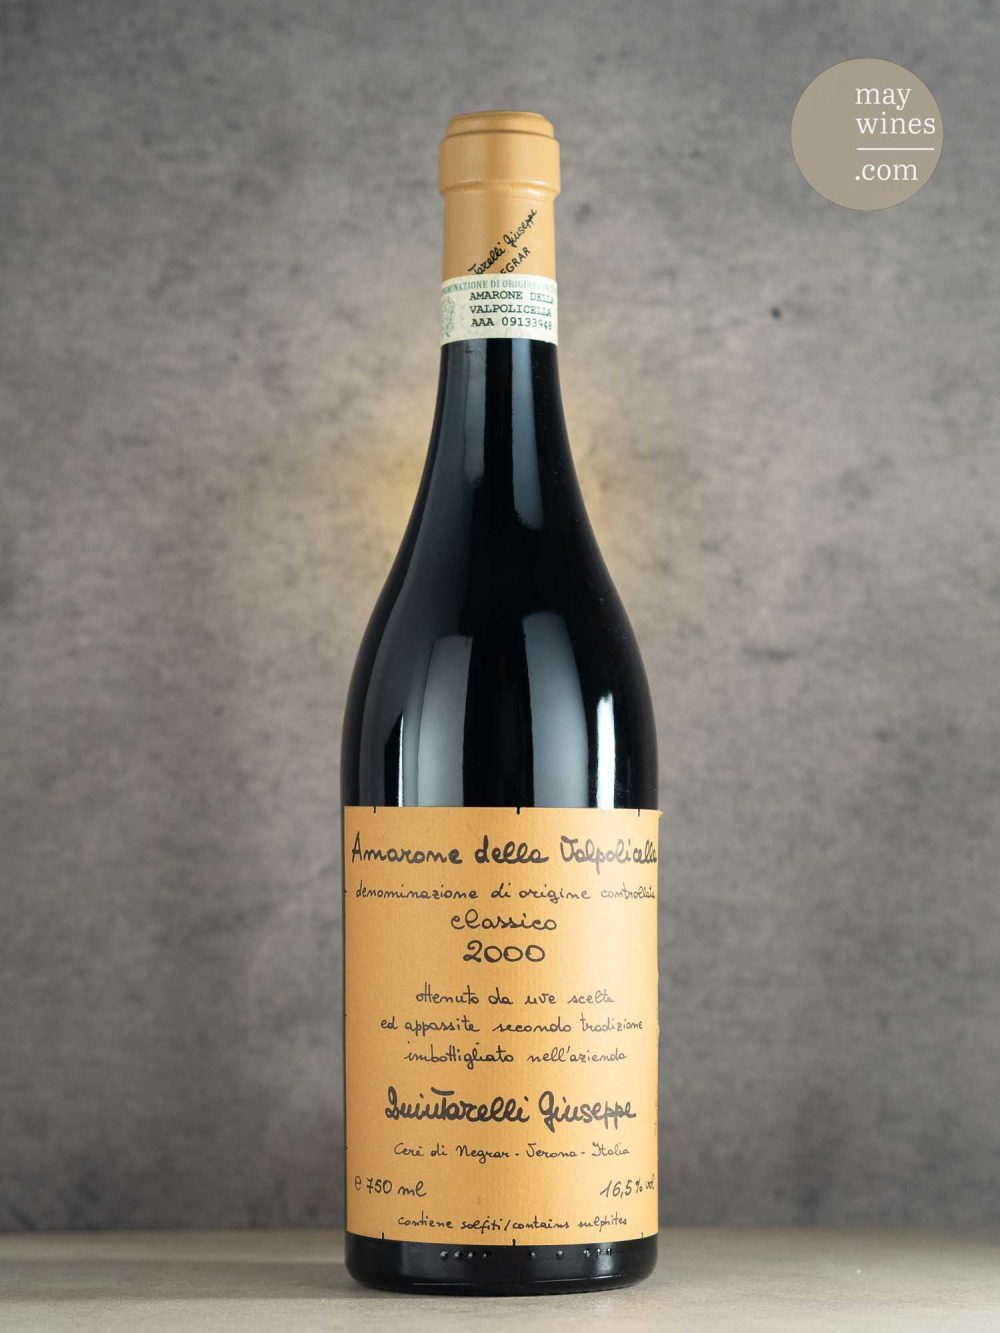 May Wines – Rotwein – 2000 Amarone della Valpolicella Classico - Giuseppe Quintarelli